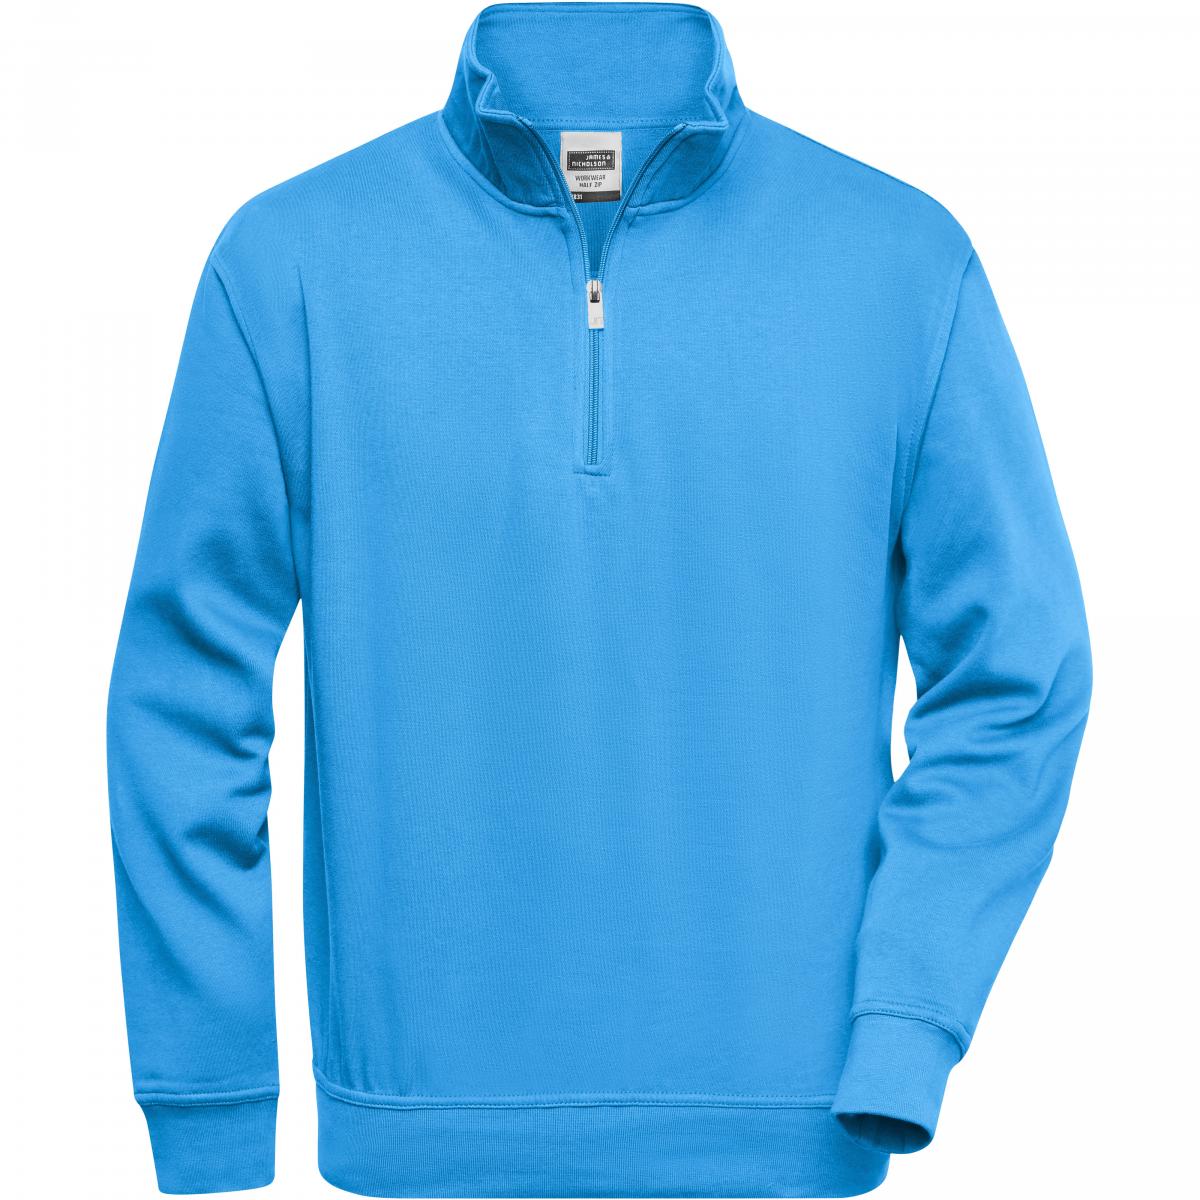 Hersteller: James+Nicholson Herstellernummer: JN831 Artikelbezeichnung: Workwear Half Zip Sweatshirt +Waschbar bis 60 °C Farbe: Aqua